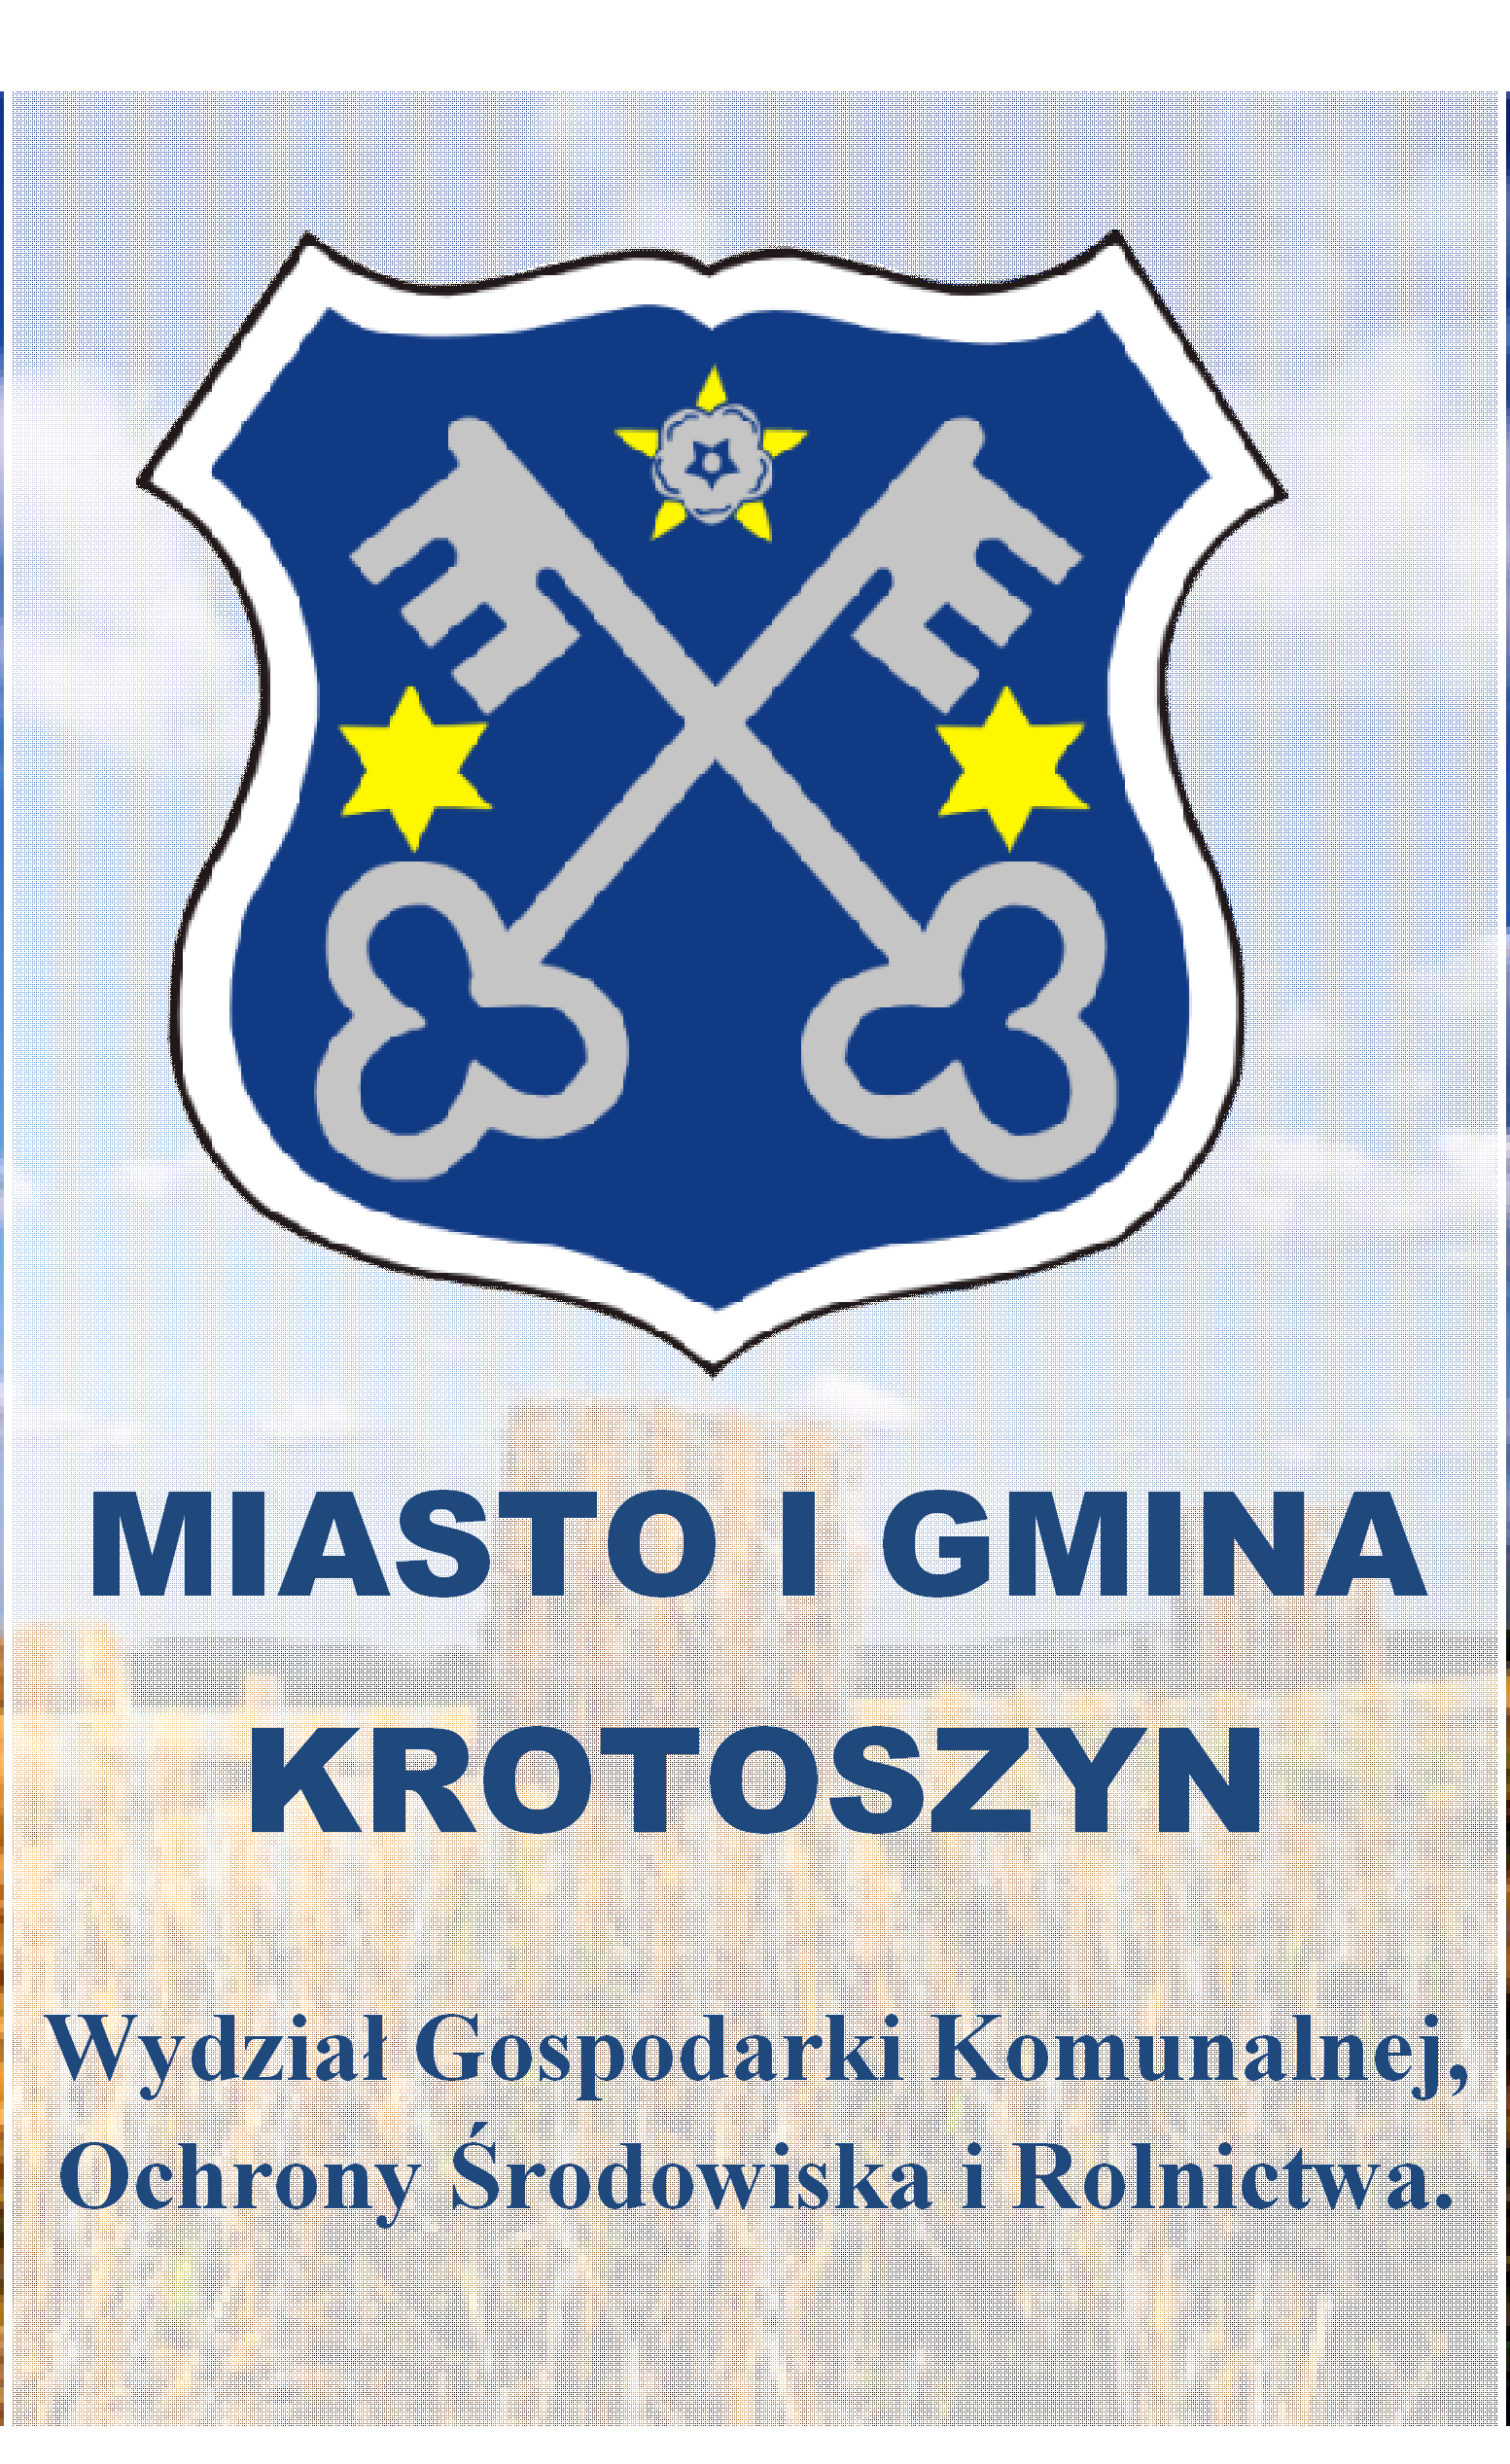 MIASTO I GMINA KROTOSZYN Wydział Gospodarki Komunalnej, Ochrony Środowiska i Rolnictwa.